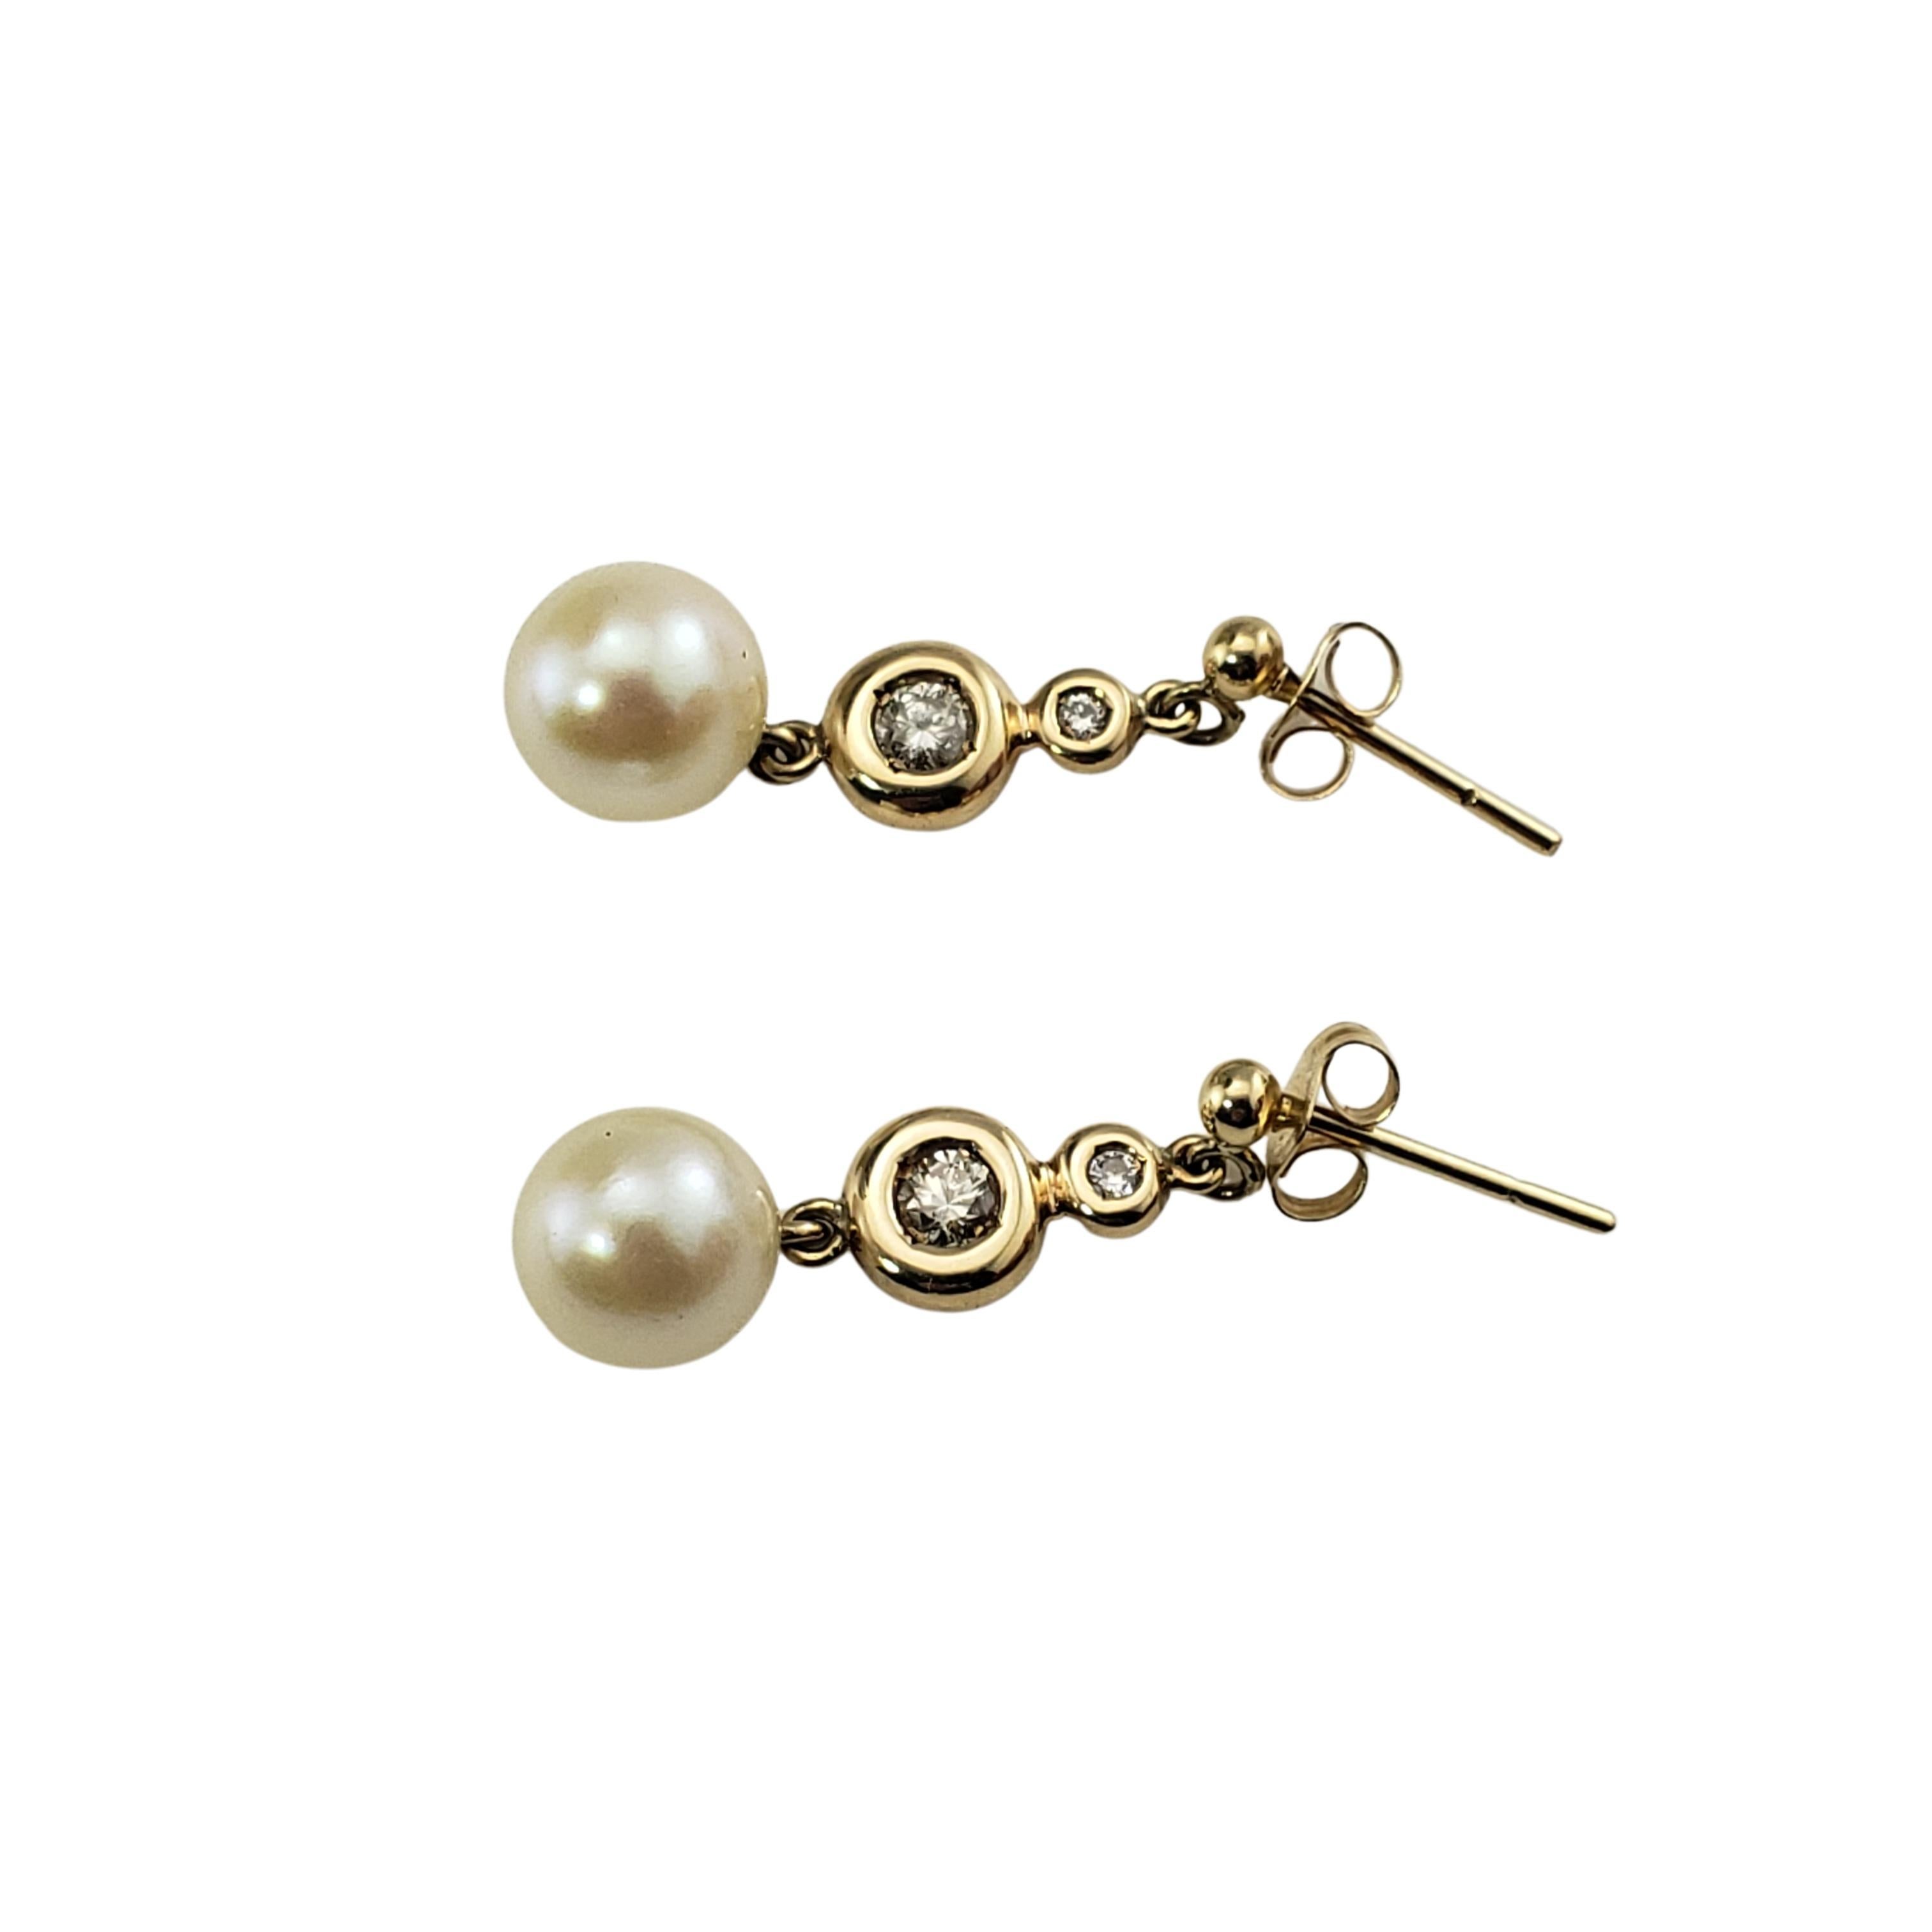 9 Karat Gelbgold Perlen- und Diamant-Ohrringe-

Die hübschen Ohrringe bestehen jeweils aus einer runden Perle (8 mm) und zwei runden Diamanten im Brillantschliff, gefasst in 9 Karat Gelbgold.  Verschluss mit Rückenlehne.

Ungefähres Gesamtgewicht